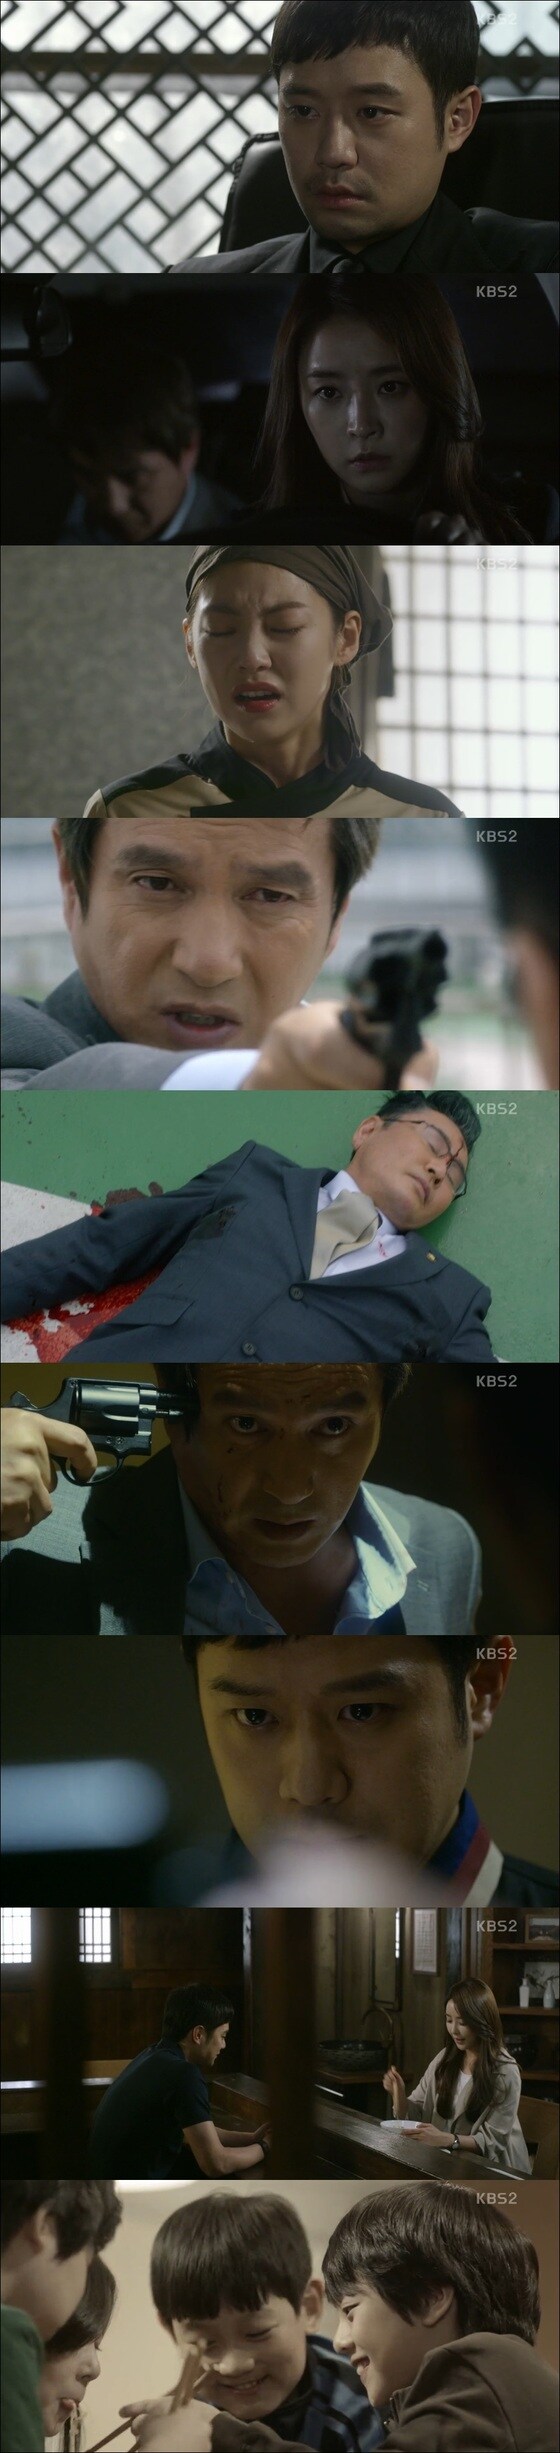 '국수의 신'이 30일 방송된 20회를 끝으로 막을 내렸다. © News1star / KBS2 '국수의 신' 20회 캡처